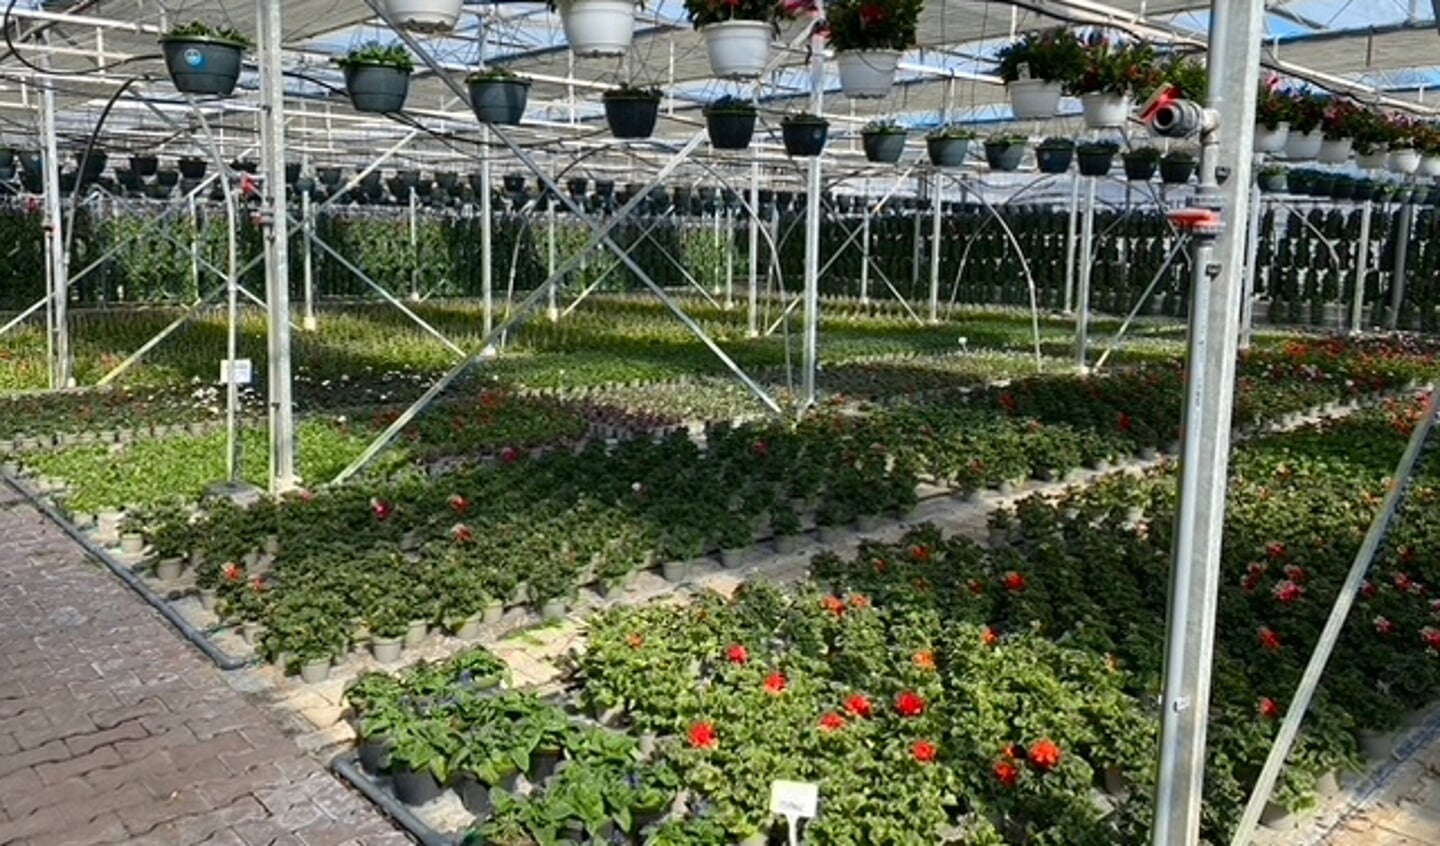 Ook planten in potjes of als hanging baskets zijn er verkrijgbaar. Voor iedere tuin en smaak is er een passend aanbod.